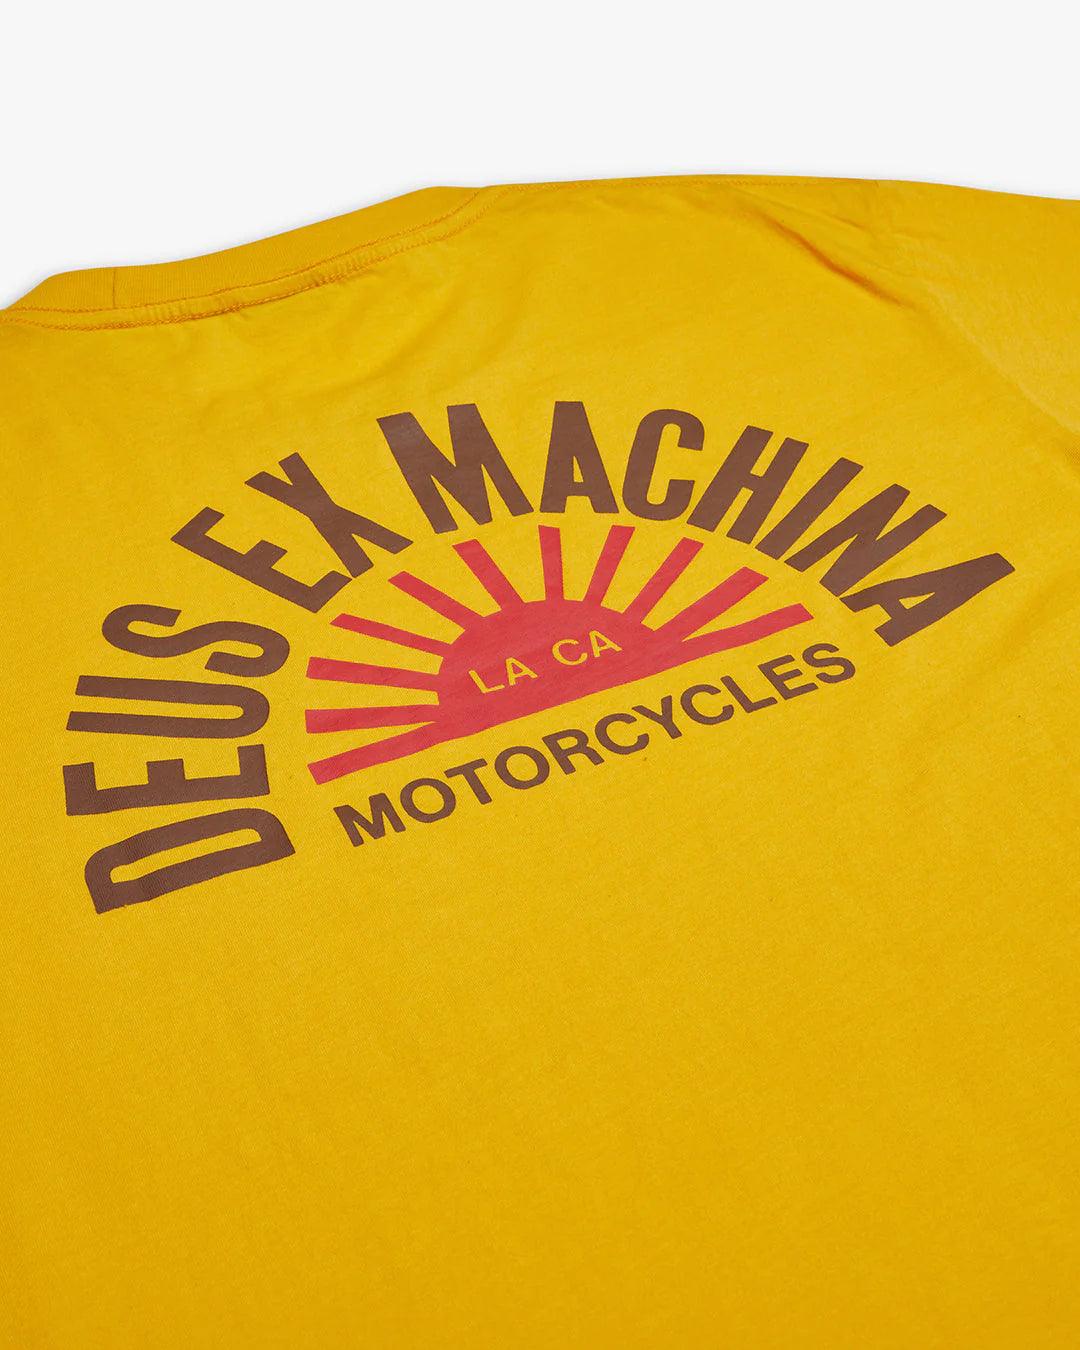 Camiseta Deus Ex Machina Sunflare Spectra Yellow - ECRU